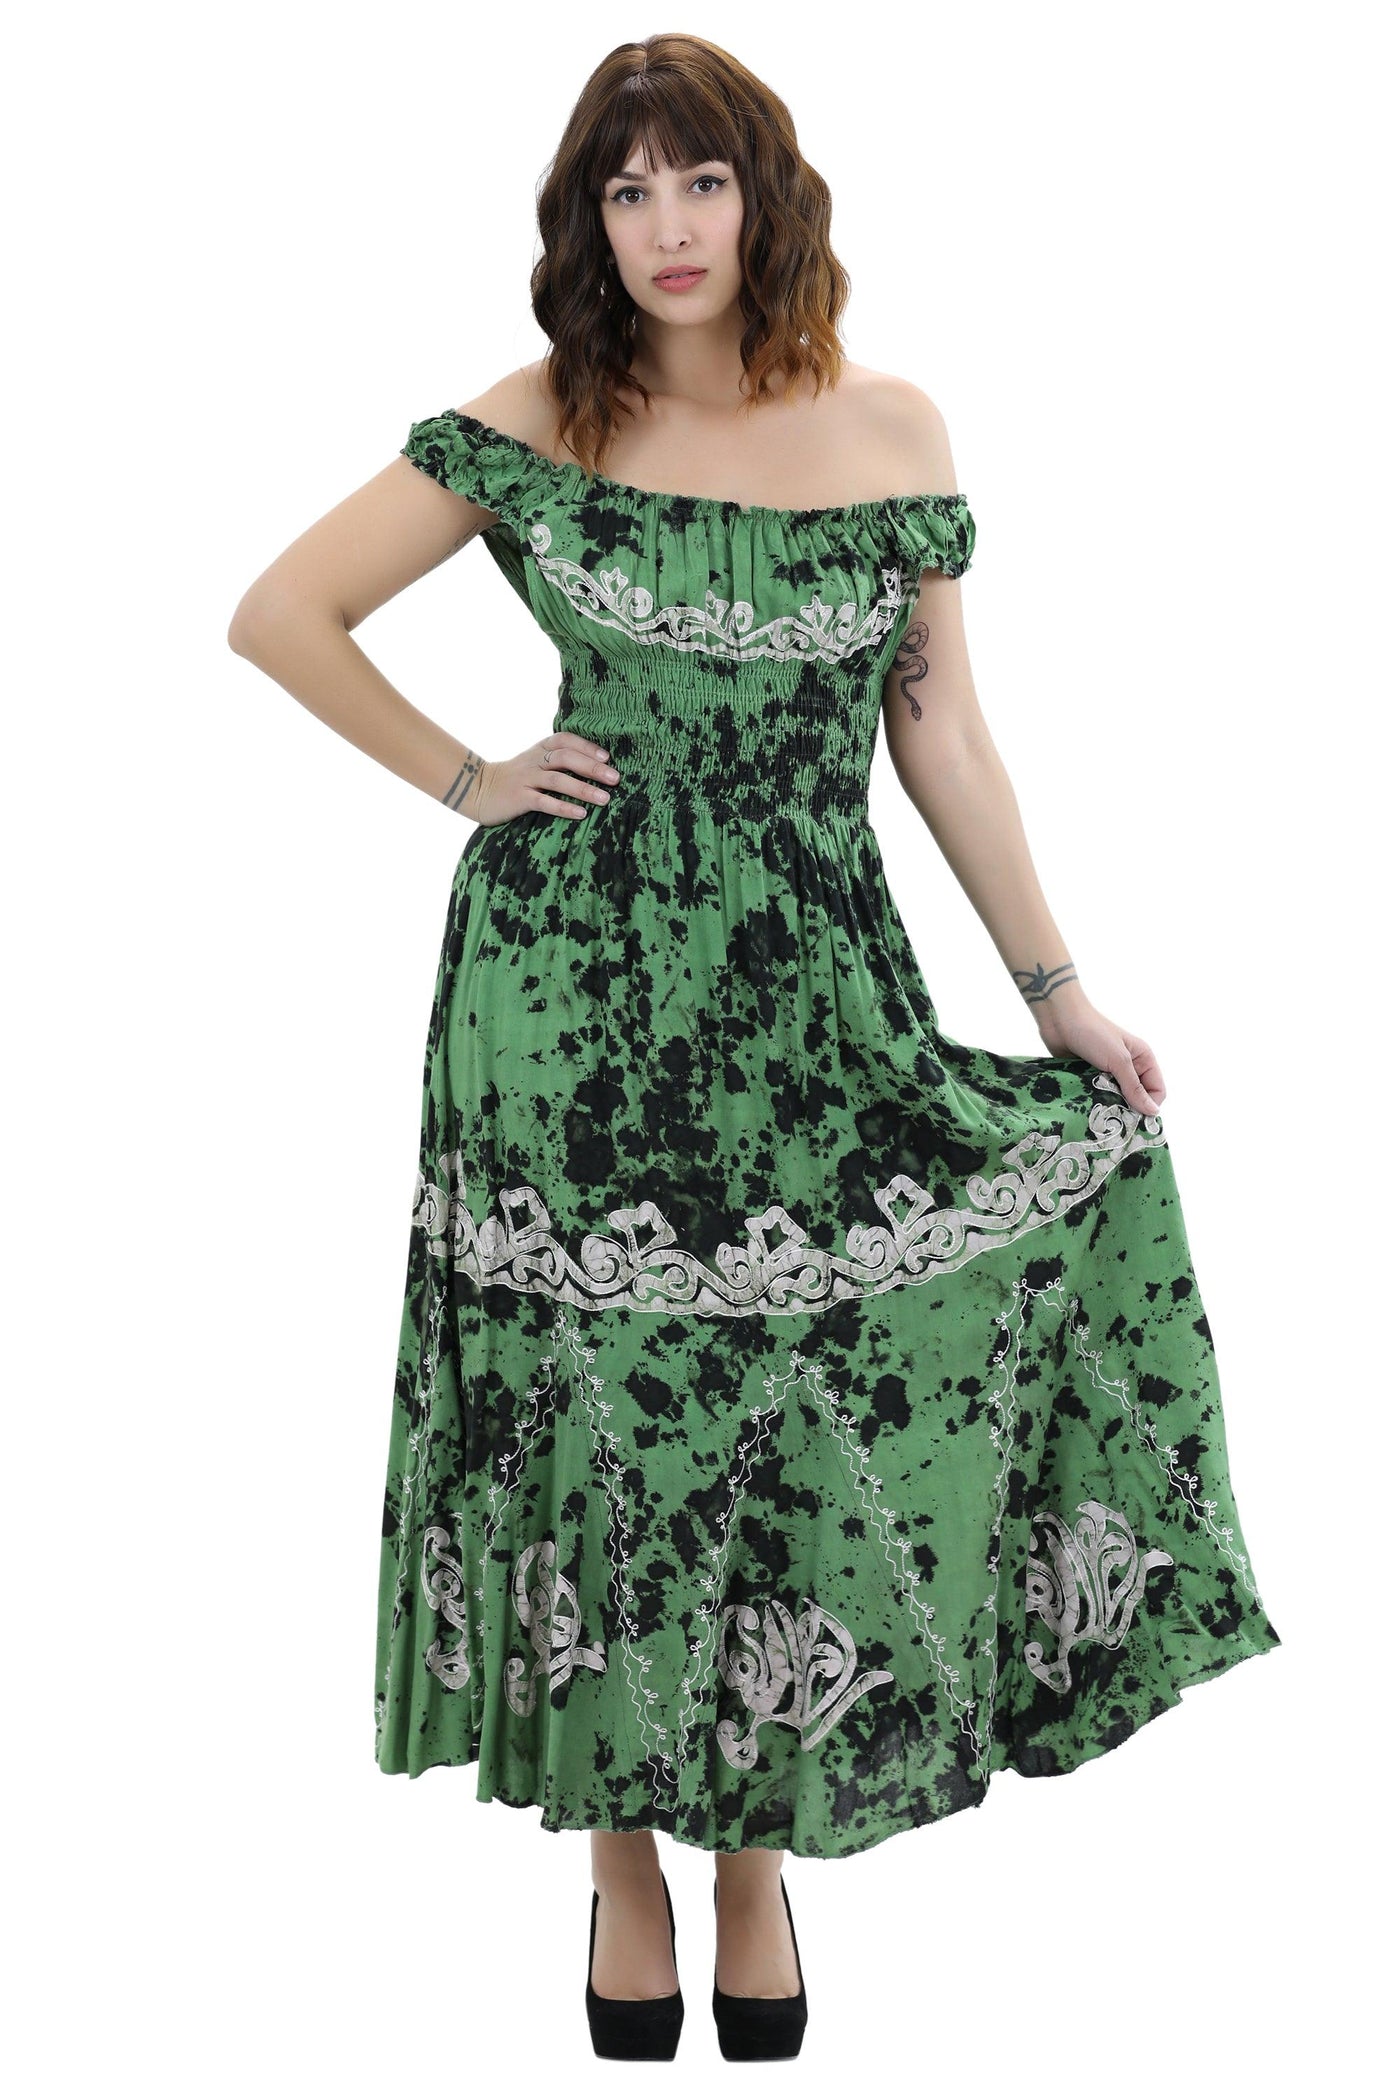 Off Shoulder Batik Print Dress 1429  - Advance Apparels Inc